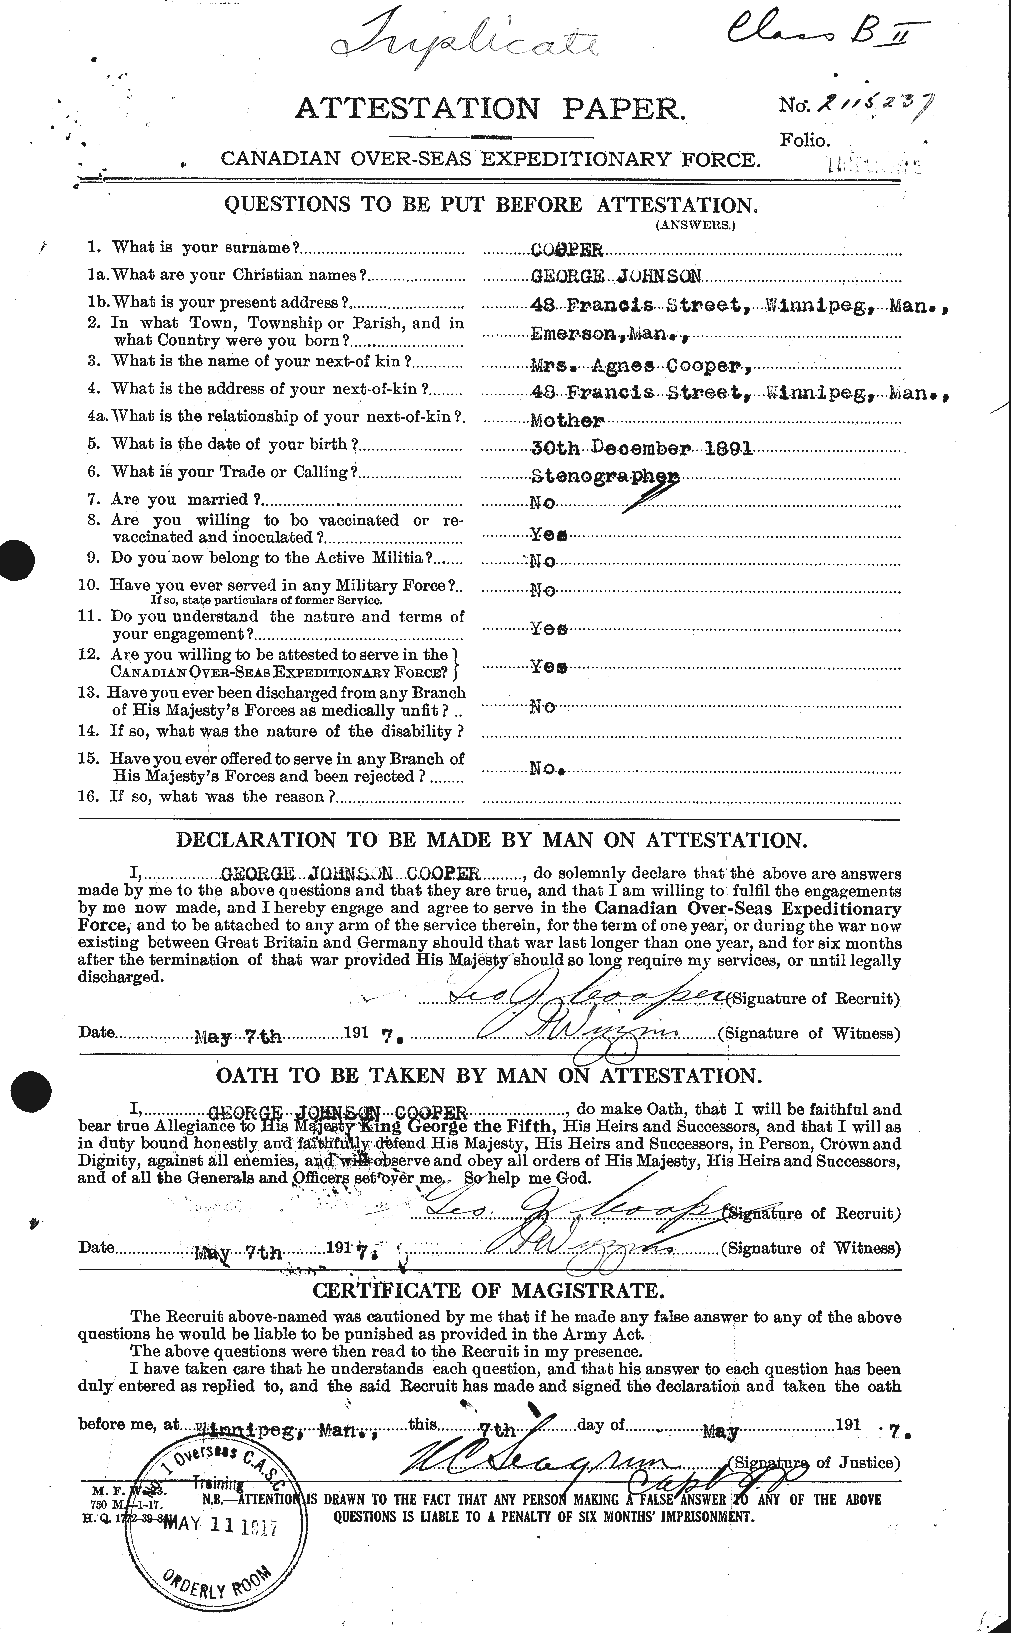 Dossiers du Personnel de la Première Guerre mondiale - CEC 057555a